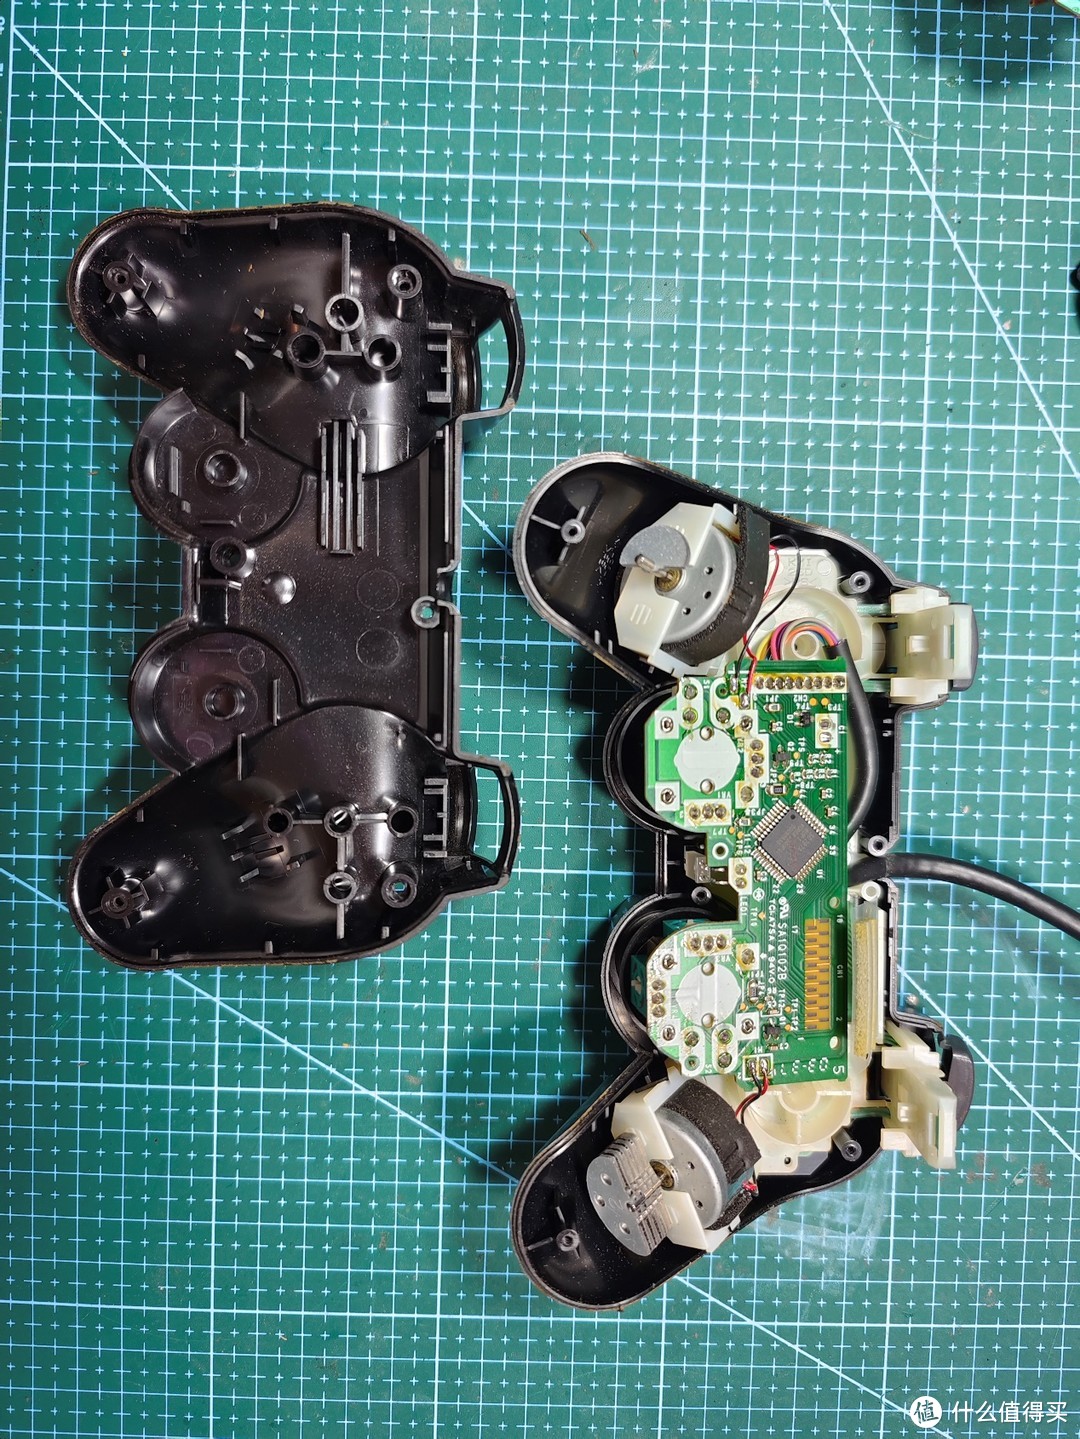 组柄和原装差多少，两只PS2手柄的拆解和修复